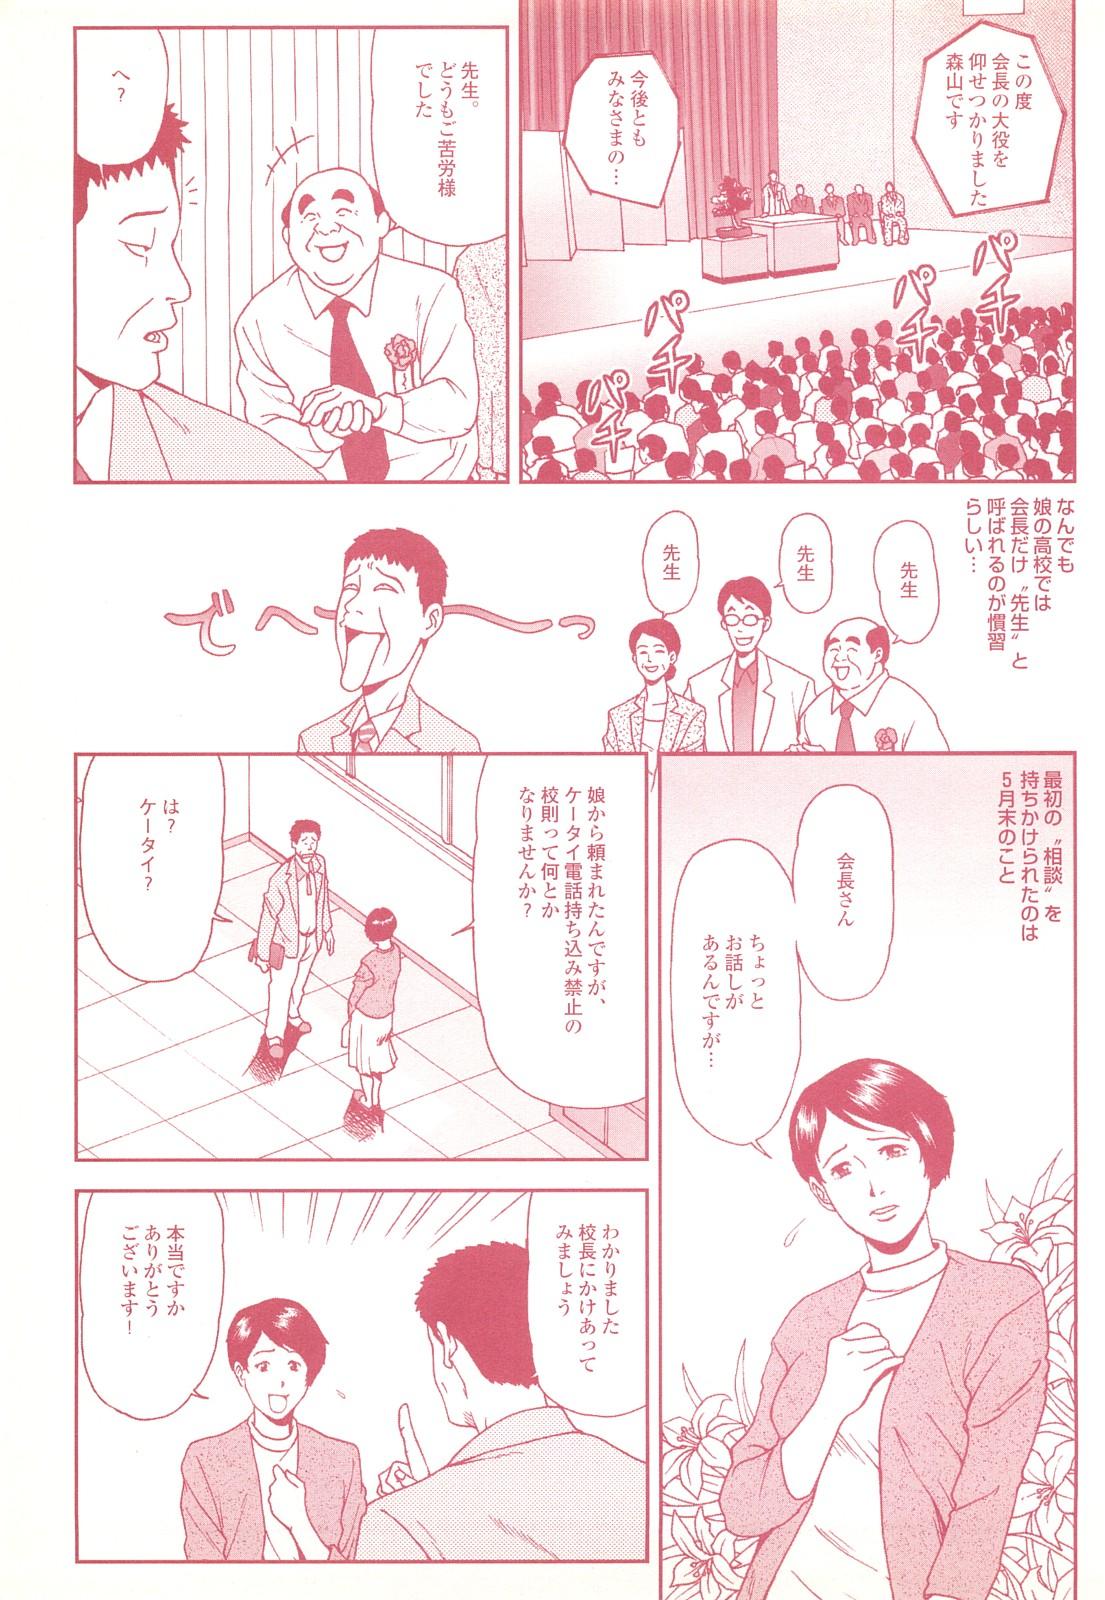 コミック裏モノJAPAN Vol.18 今井のりたつスペシャル号 116